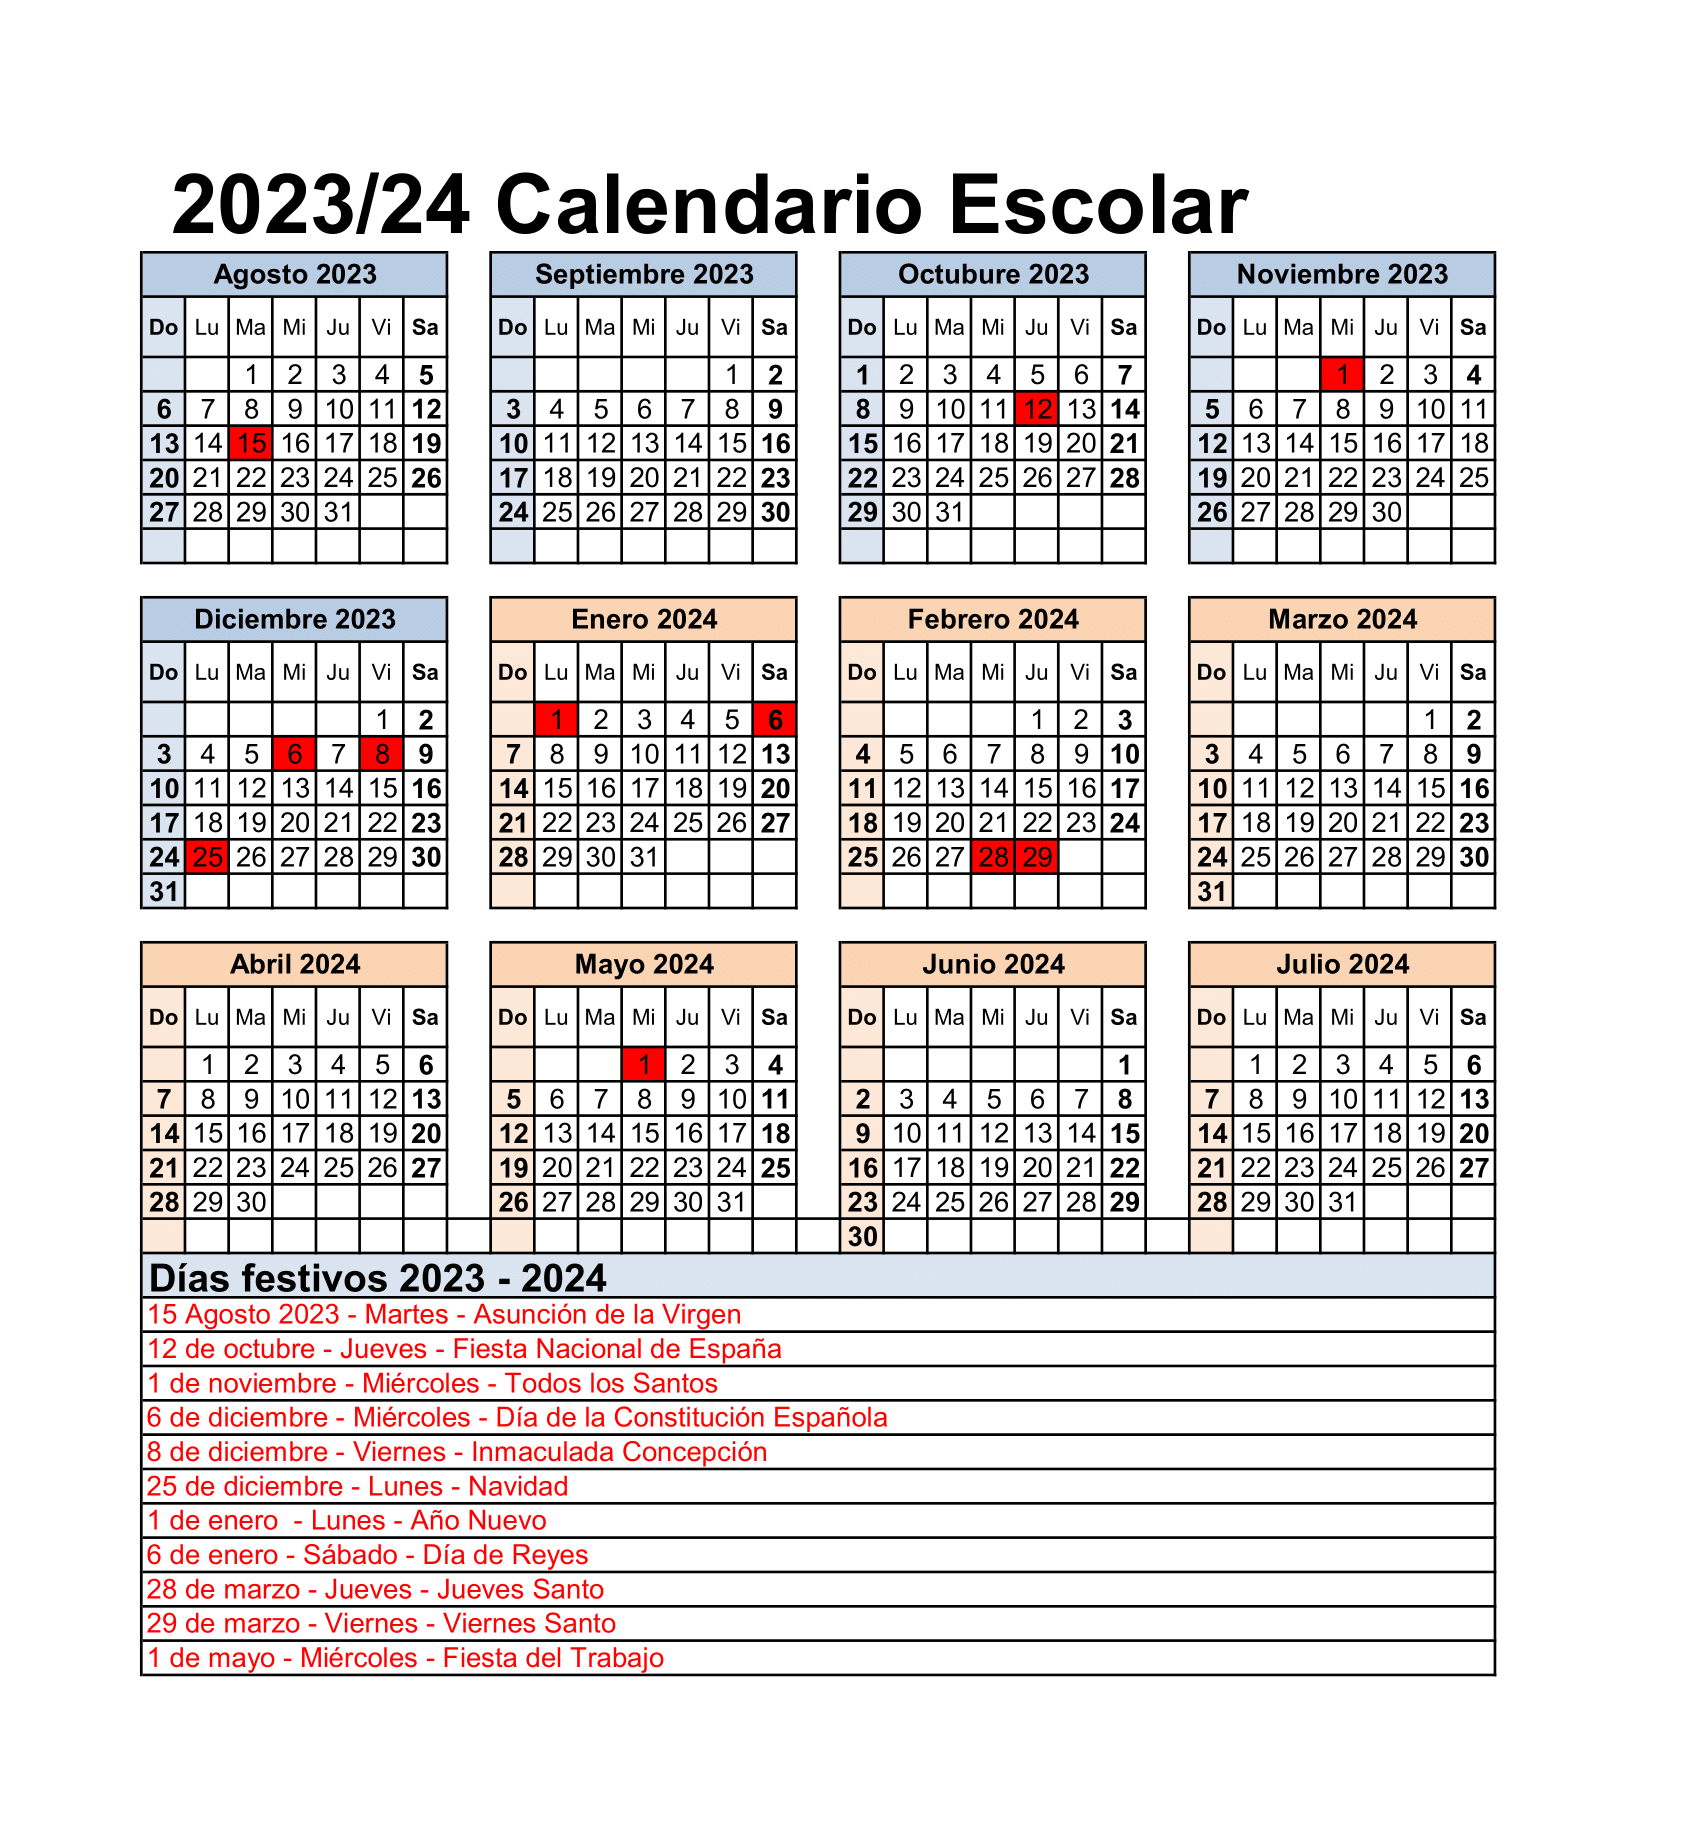 Calendario escolar 2023 y 2024